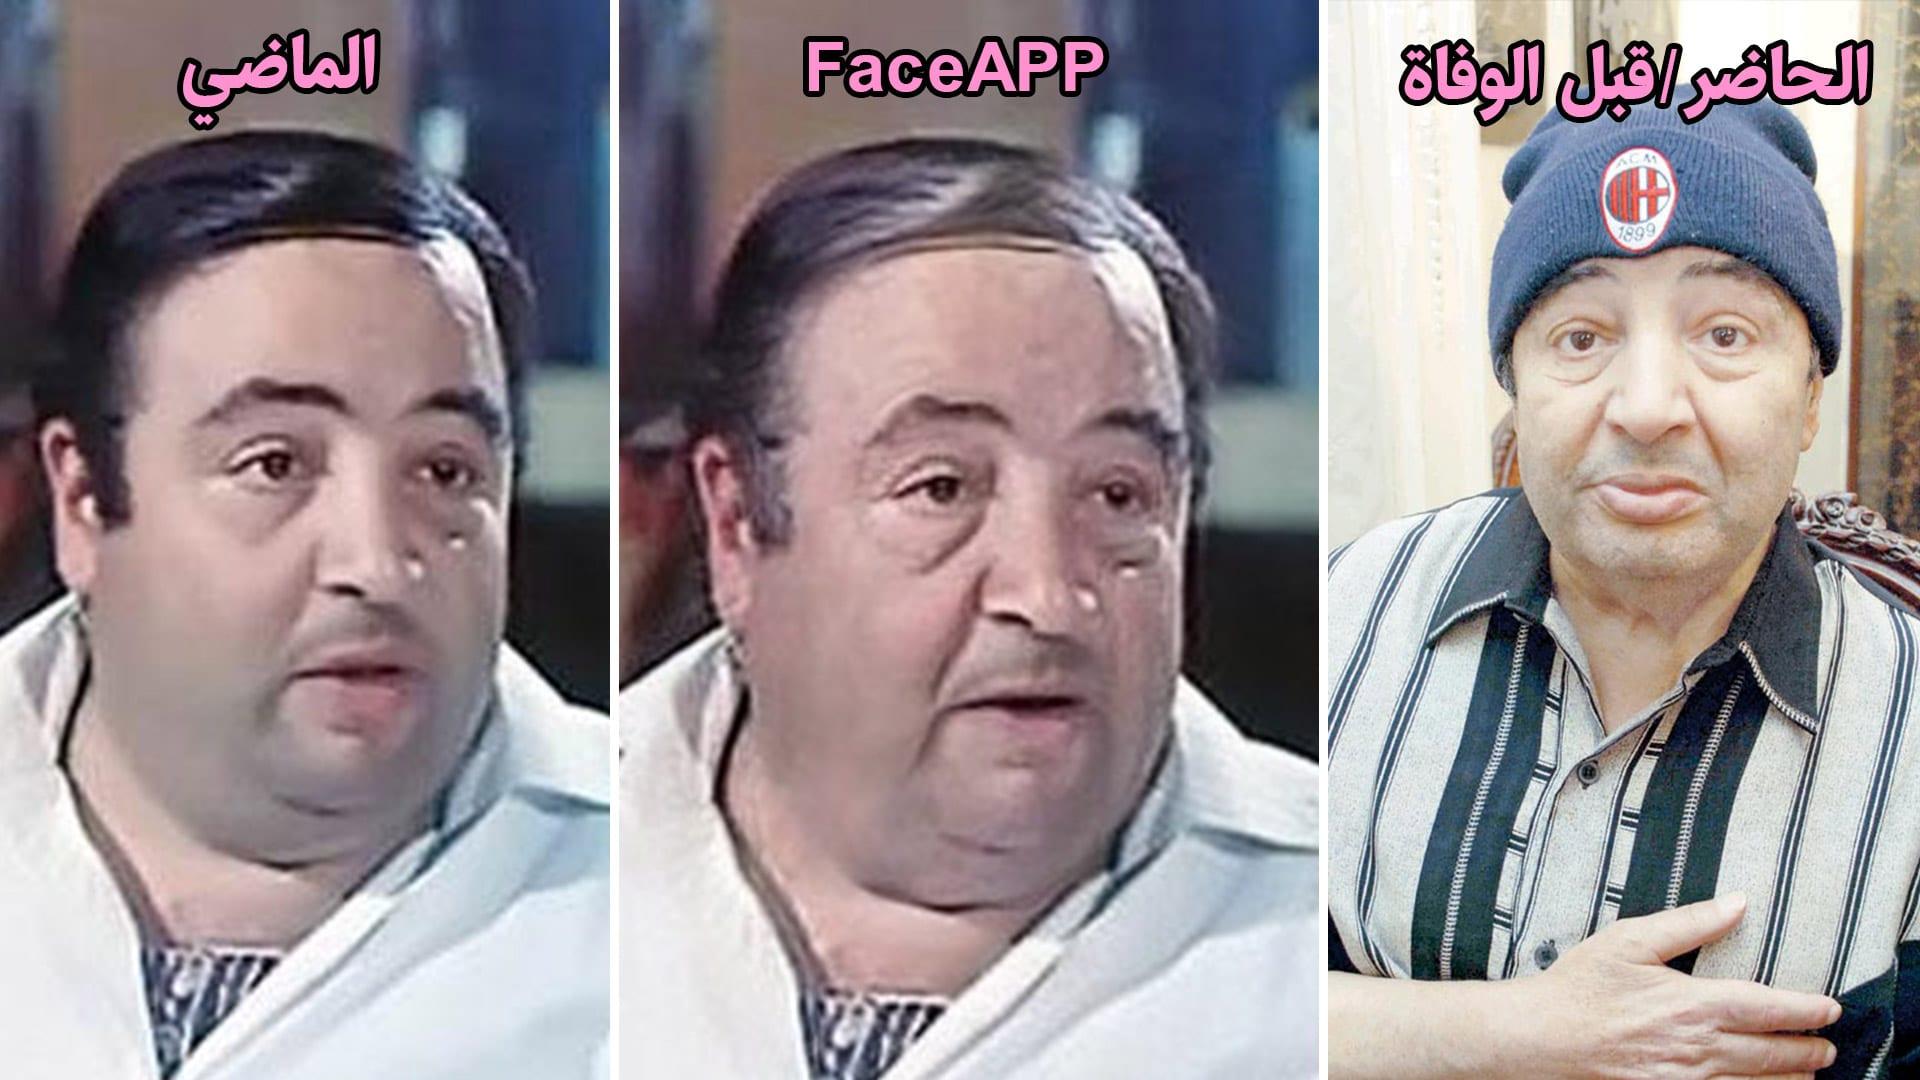 يونس شلبي - face app